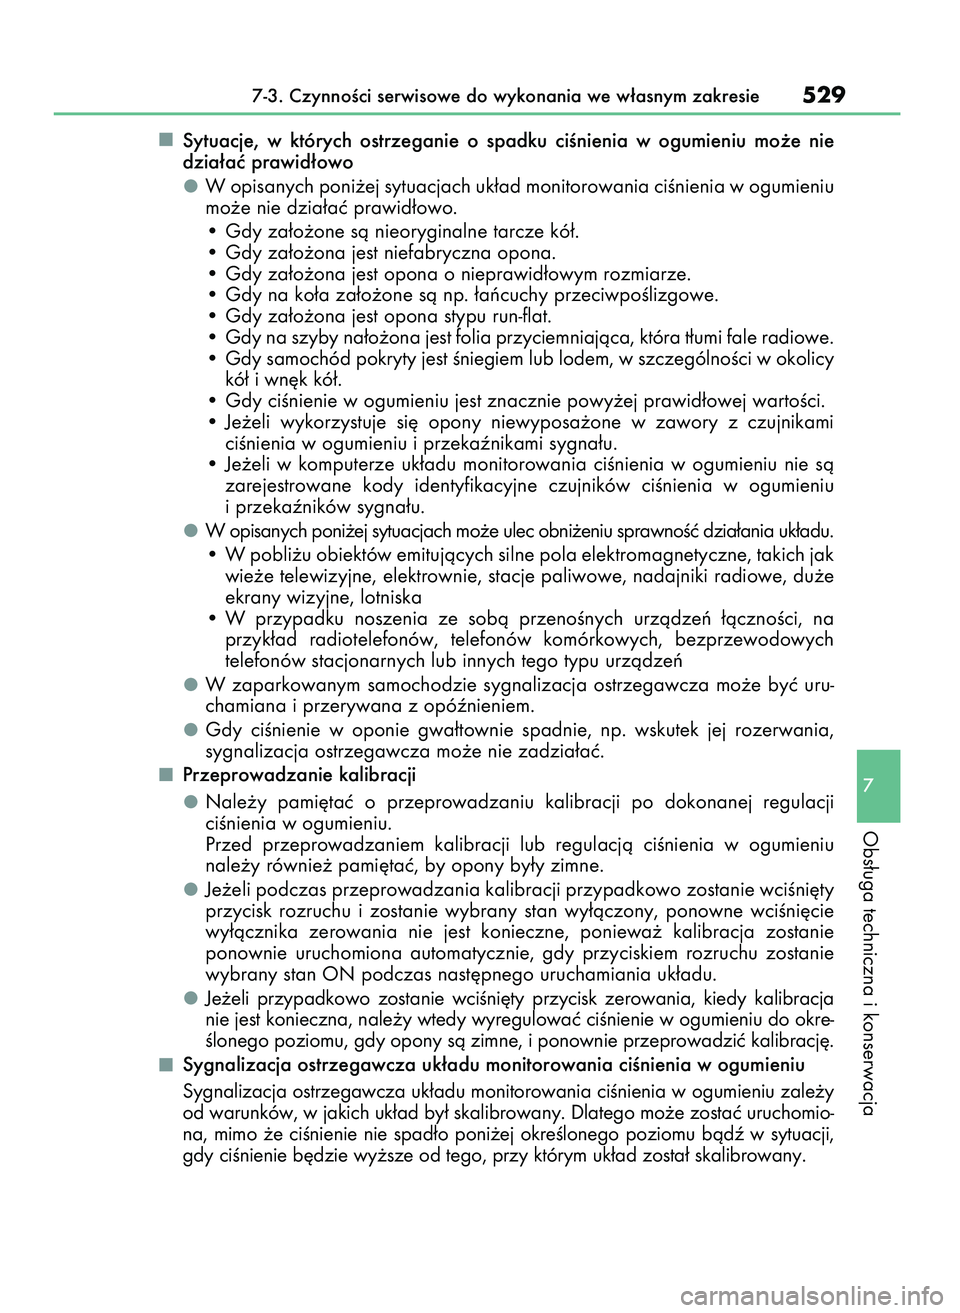 Lexus IS300h 2017  Instrukcja Obsługi (in Polish) Sytuacje,  w których  ostrzeganie  o spadku  ciÊnienia  w ogumieniu  mo˝e  nie
dzia∏aç prawid∏owo
W opisanych poni˝ej sytuacjach uk∏ad monitorowania ciÊnienia w ogumieniu
mo˝e nie dzia∏